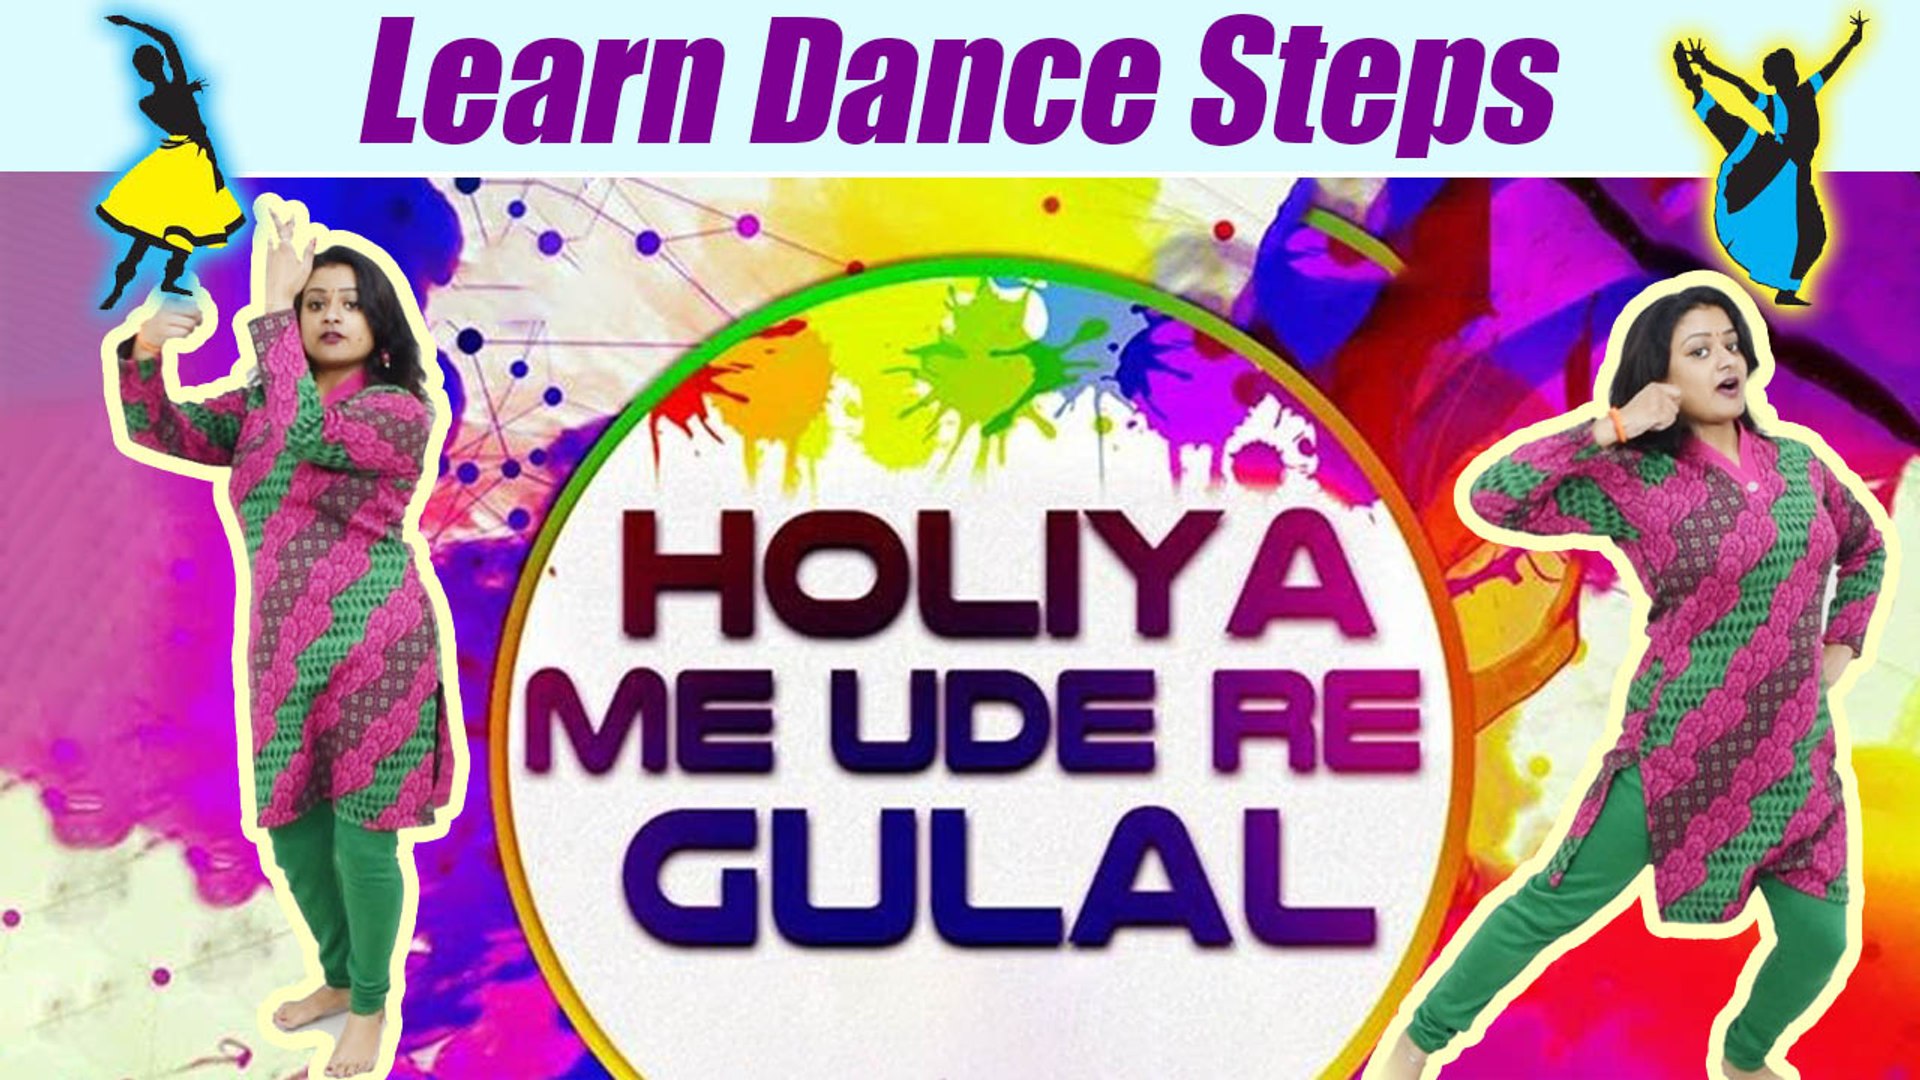 Dance Steps On Holiya Me Ude Re Gulal Holi Special à¤¹ à¤² à¤¯ à¤® à¤à¤¡ à¤° à¤ à¤² à¤² Boldsky Video Dailymotion This song sung by pratibha singh and satish dehra holiya mein ude re gulal ( होलिया में उड़े रे गुलाल ) is super hit song of ila arun, you can say holi festival incomplete. dance steps on holiya me ude re gulal holi special à¤¹ à¤² à¤¯ à¤® à¤à¤¡ à¤° à¤ à¤² à¤² boldsky